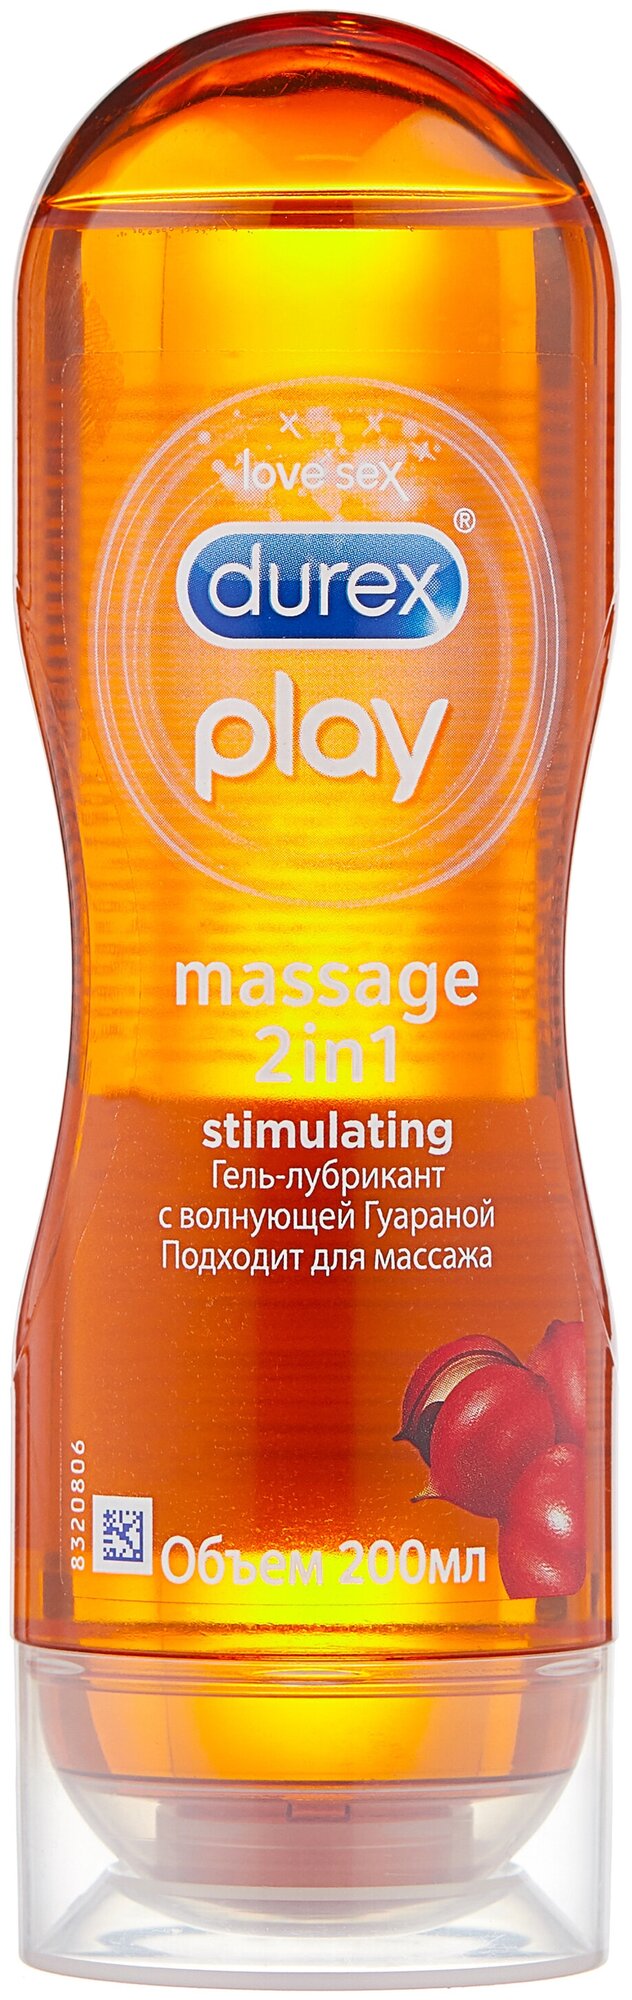 Гель-смазка Durex Play Massage 2 in1 Stimulating с возбуждающей Гуараной